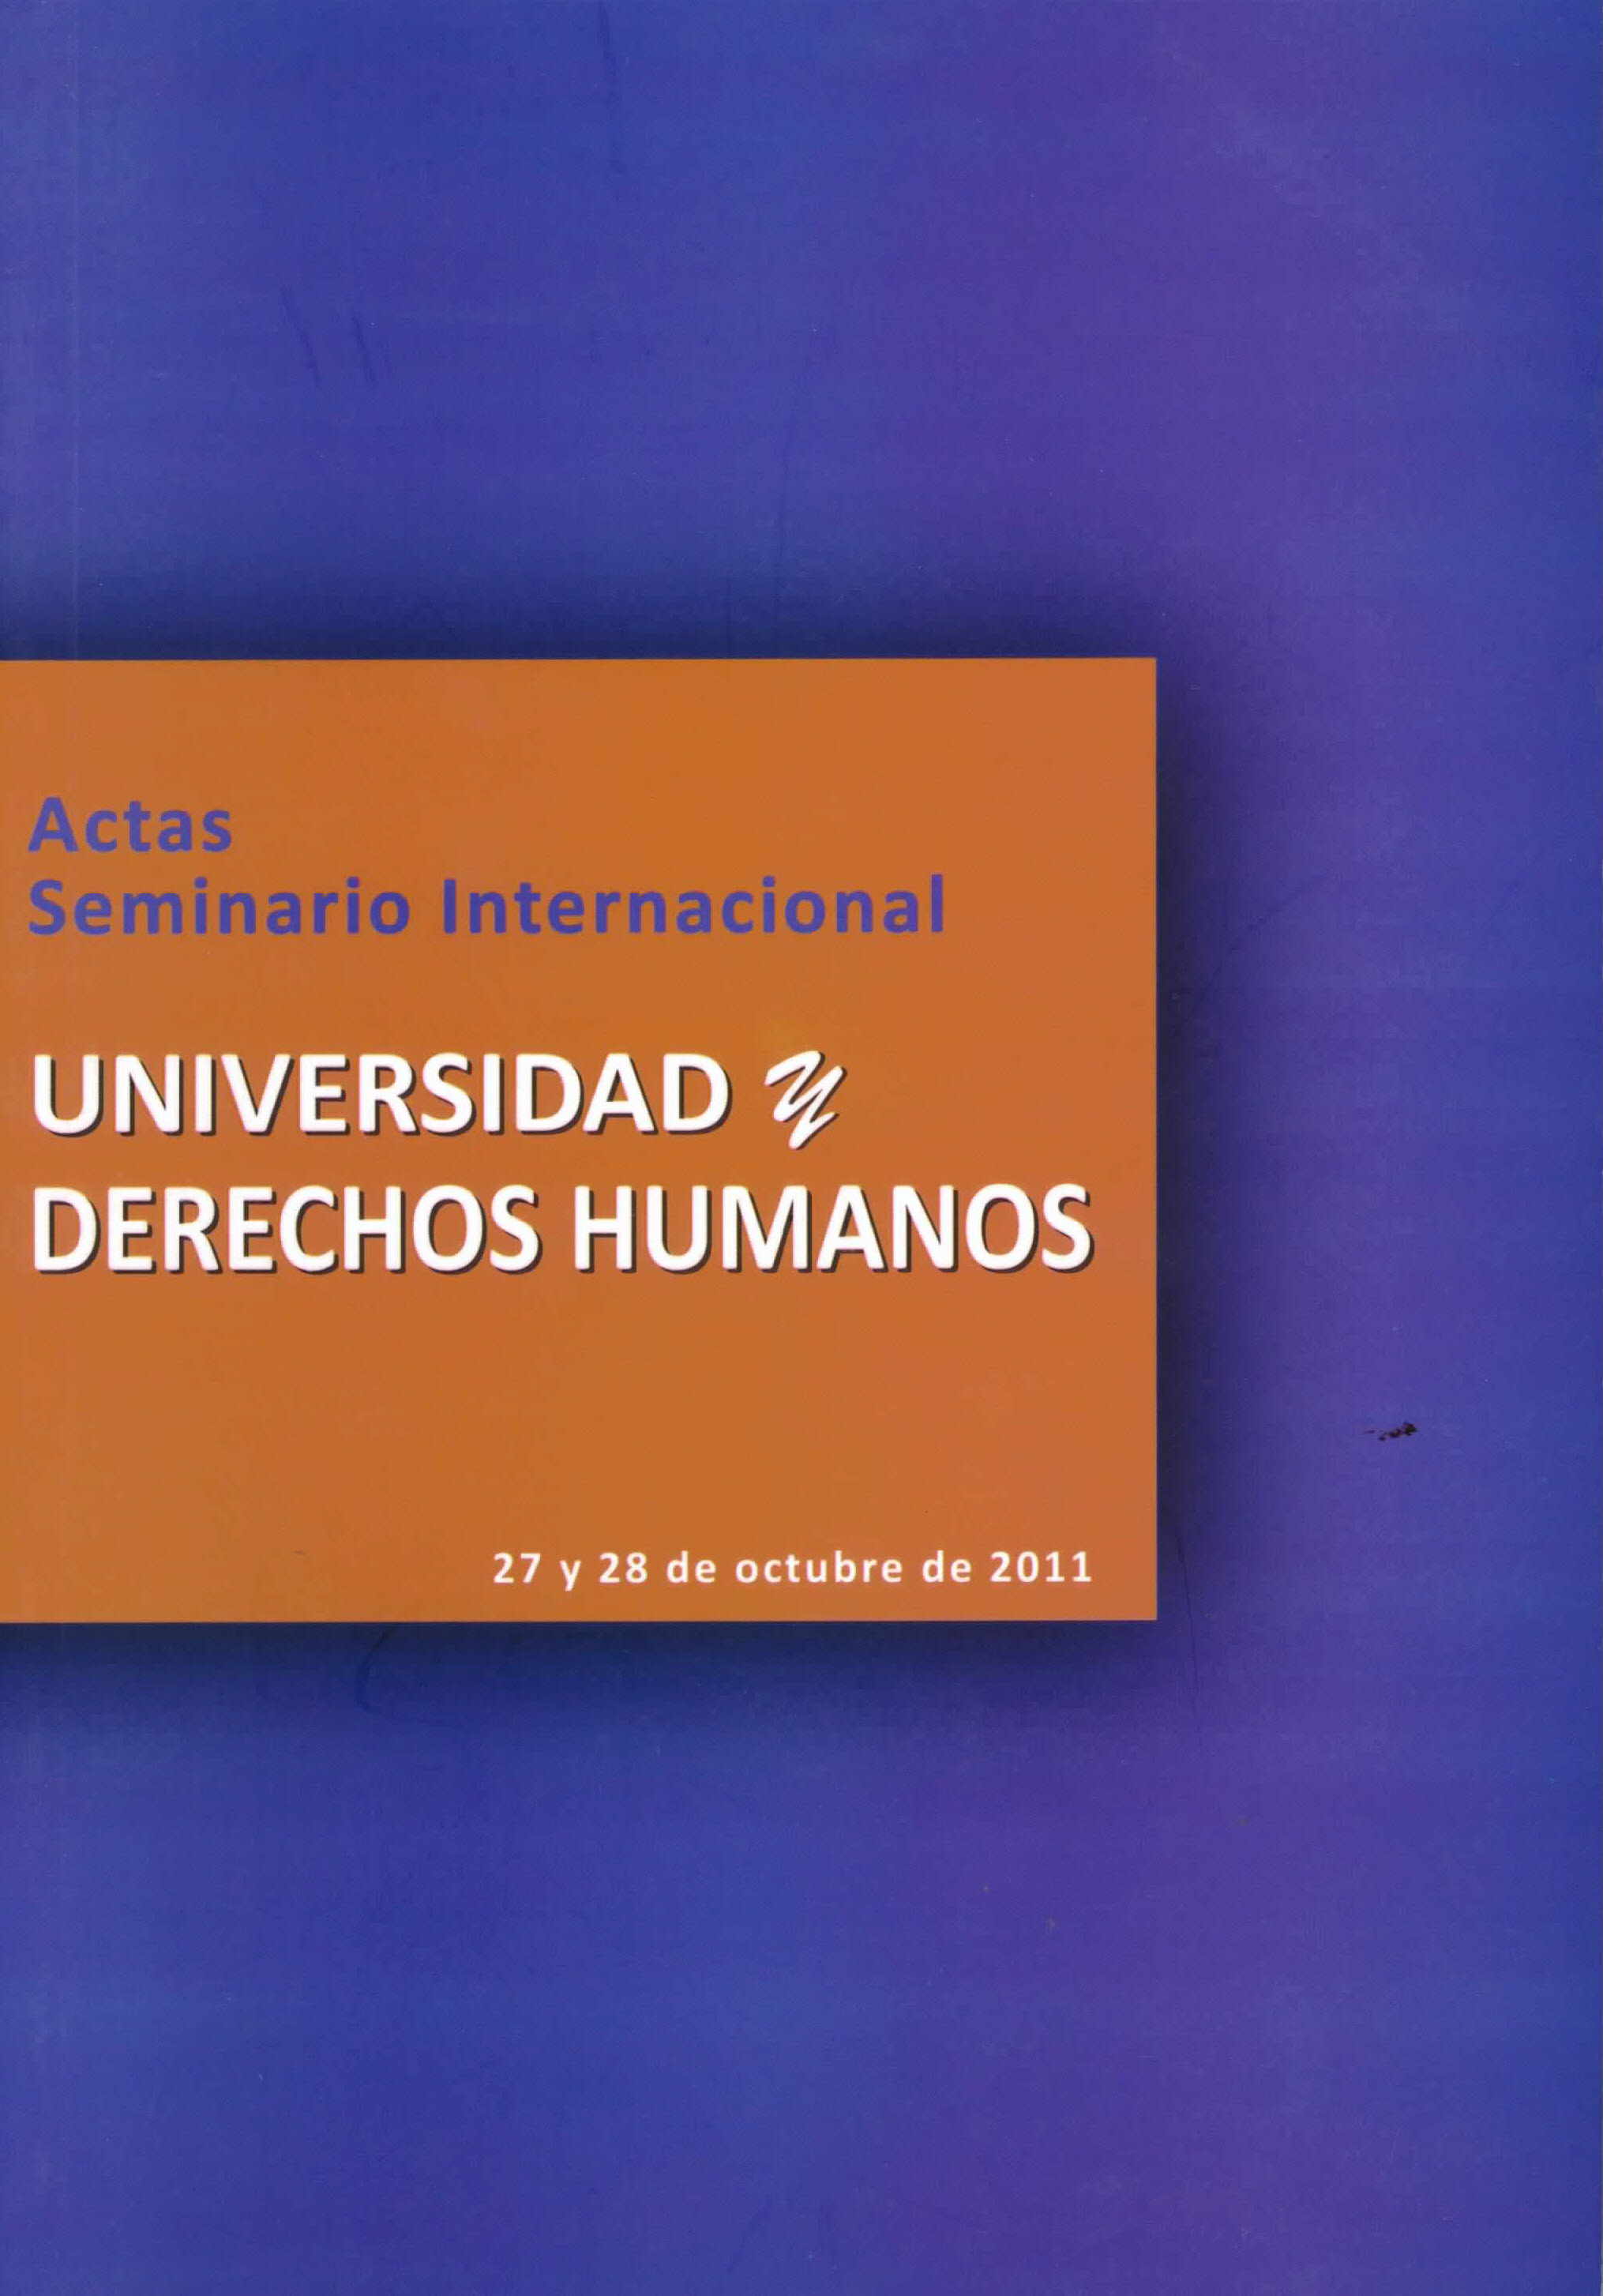 Actas Seminario Internacional Universidad y derechos humanos